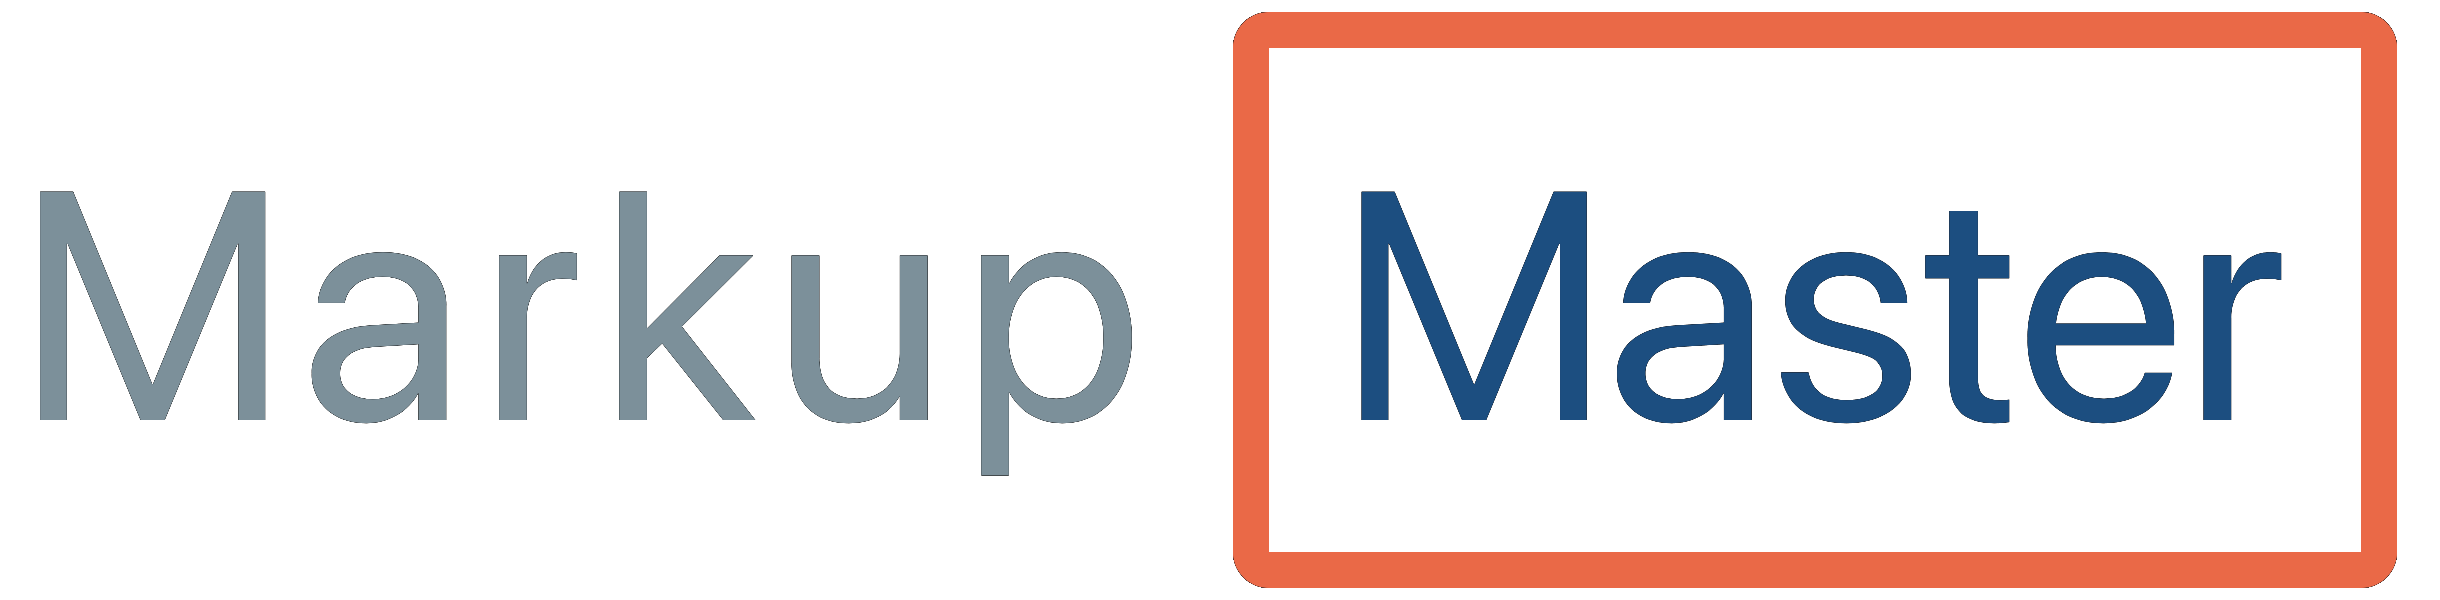 Markup Masketer Logo